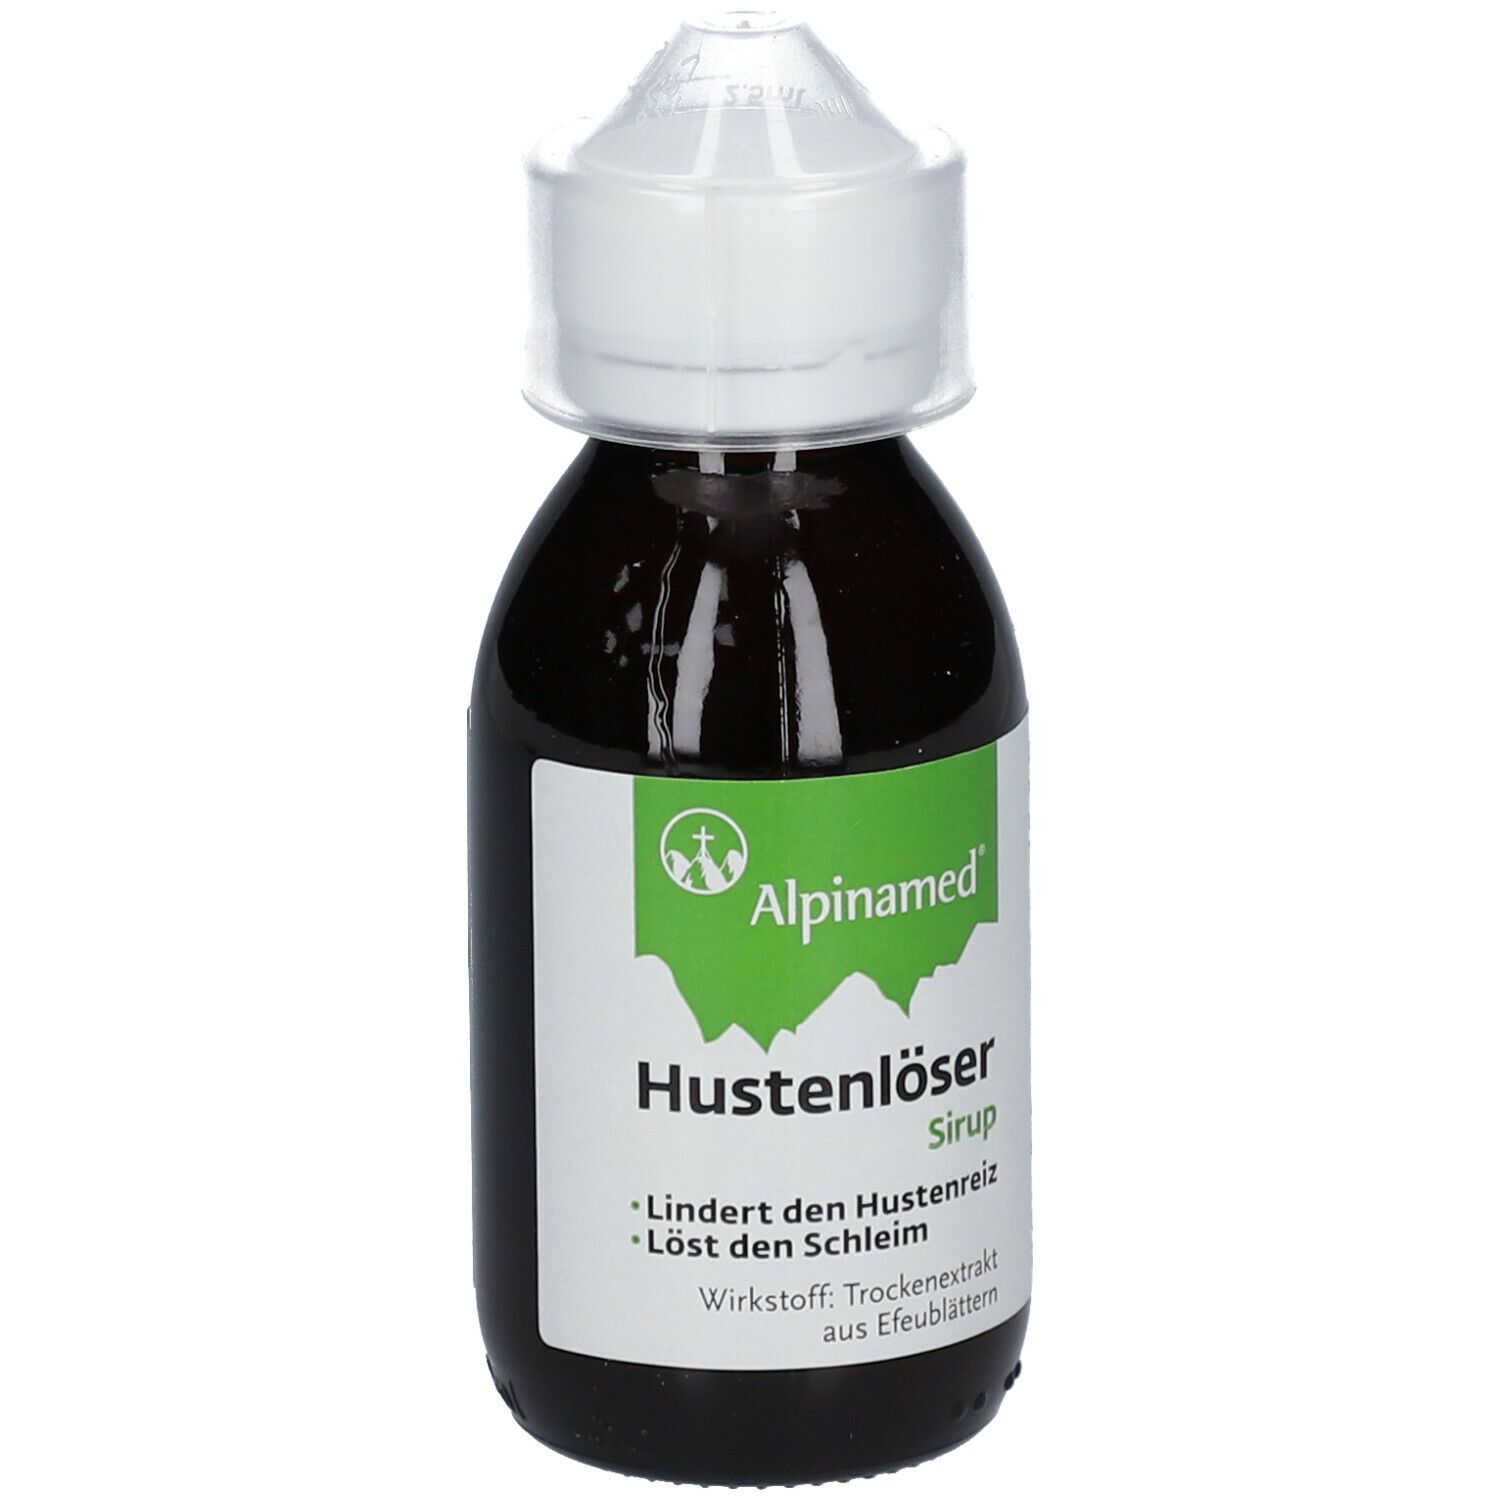 Alpinamed® Hustenlöser-Sirup